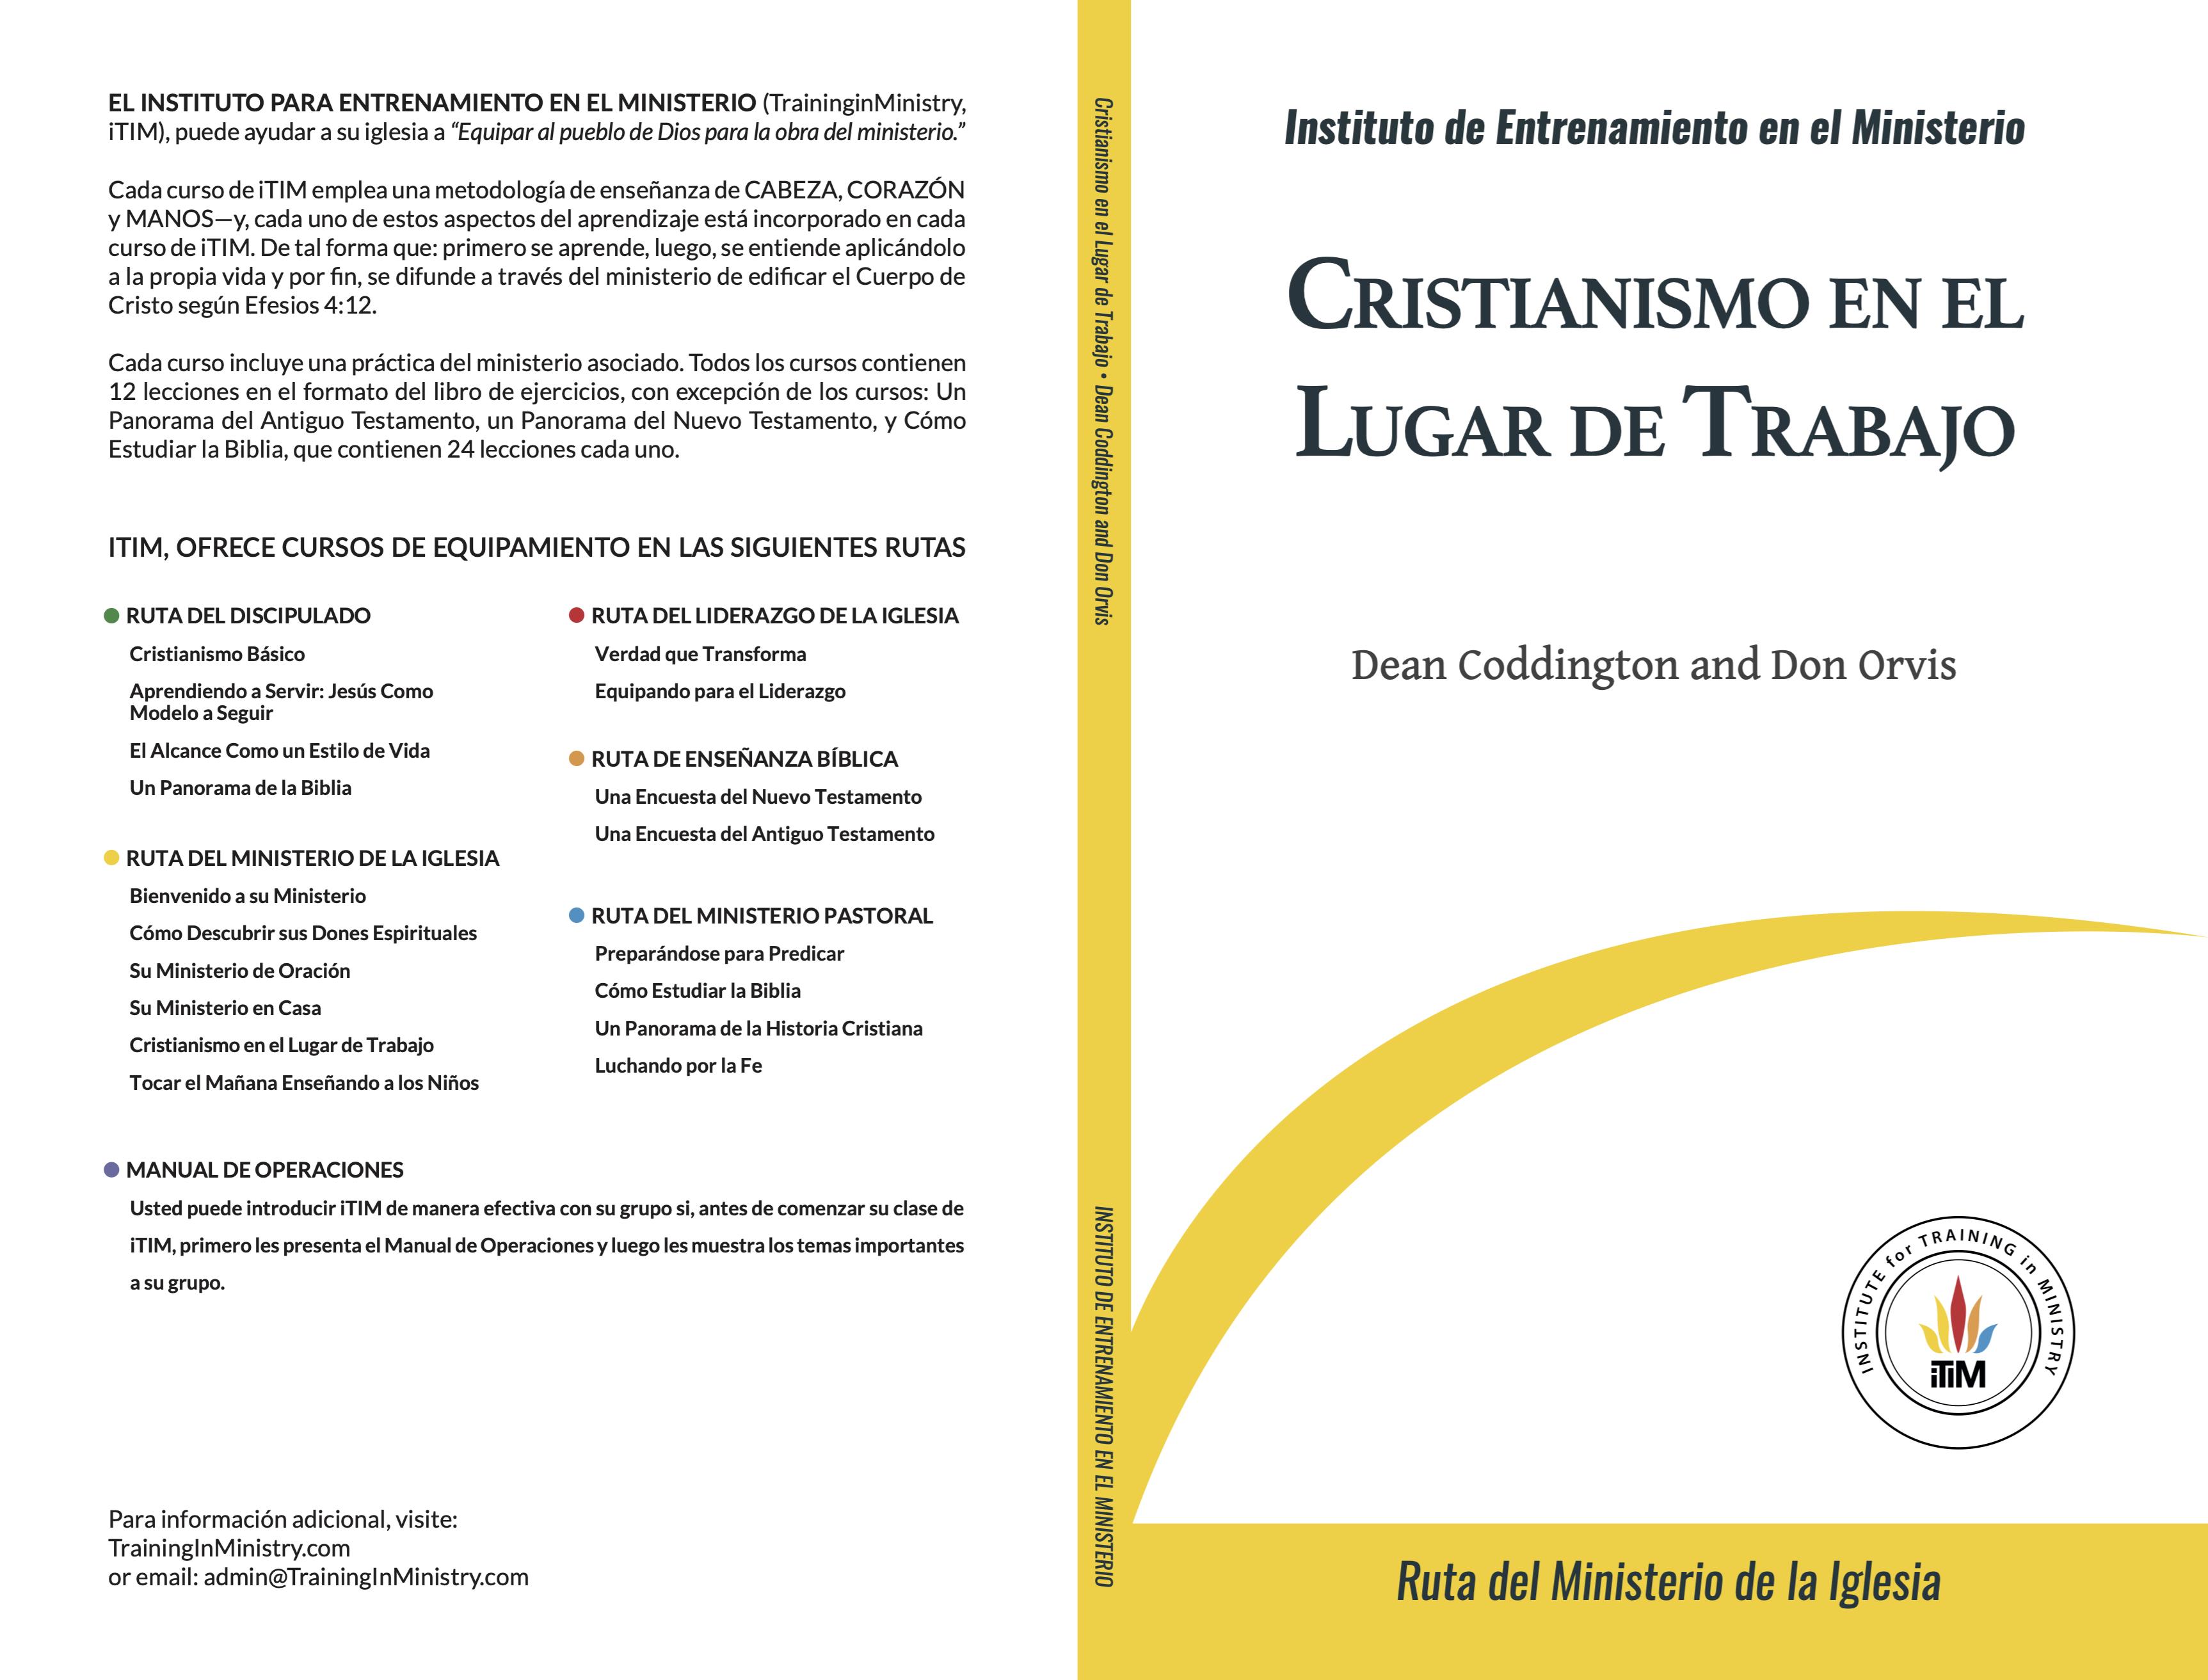 Christianismo en el Lugar de Trabajo cover image